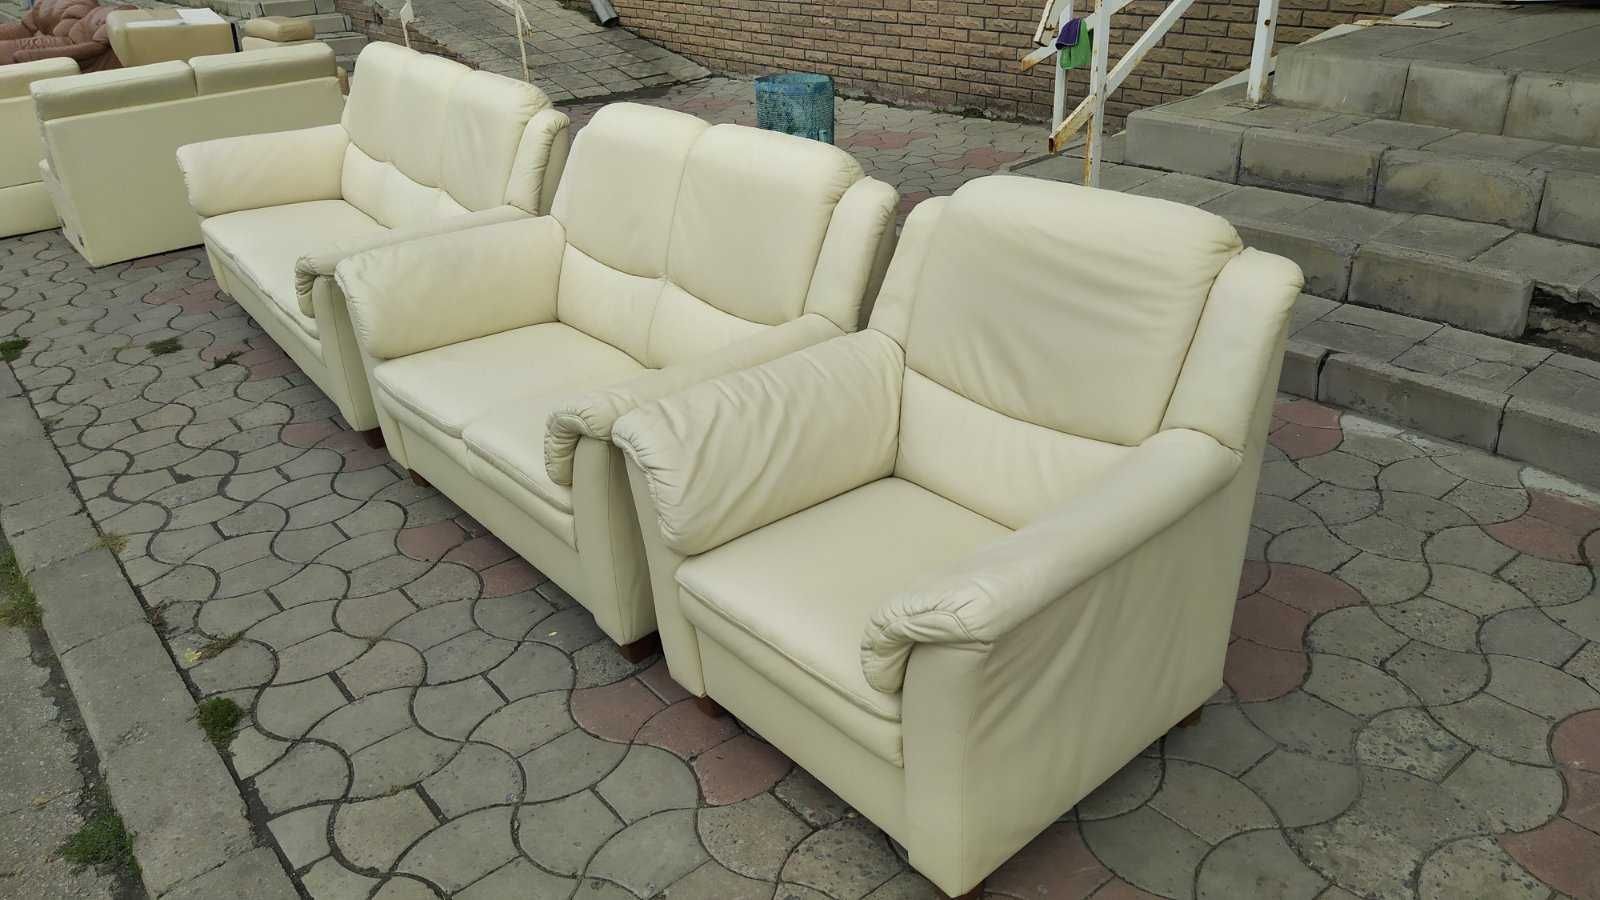 Кожаный диван 2-ка и кресло "Hukla" (290903) (290904) из Германии